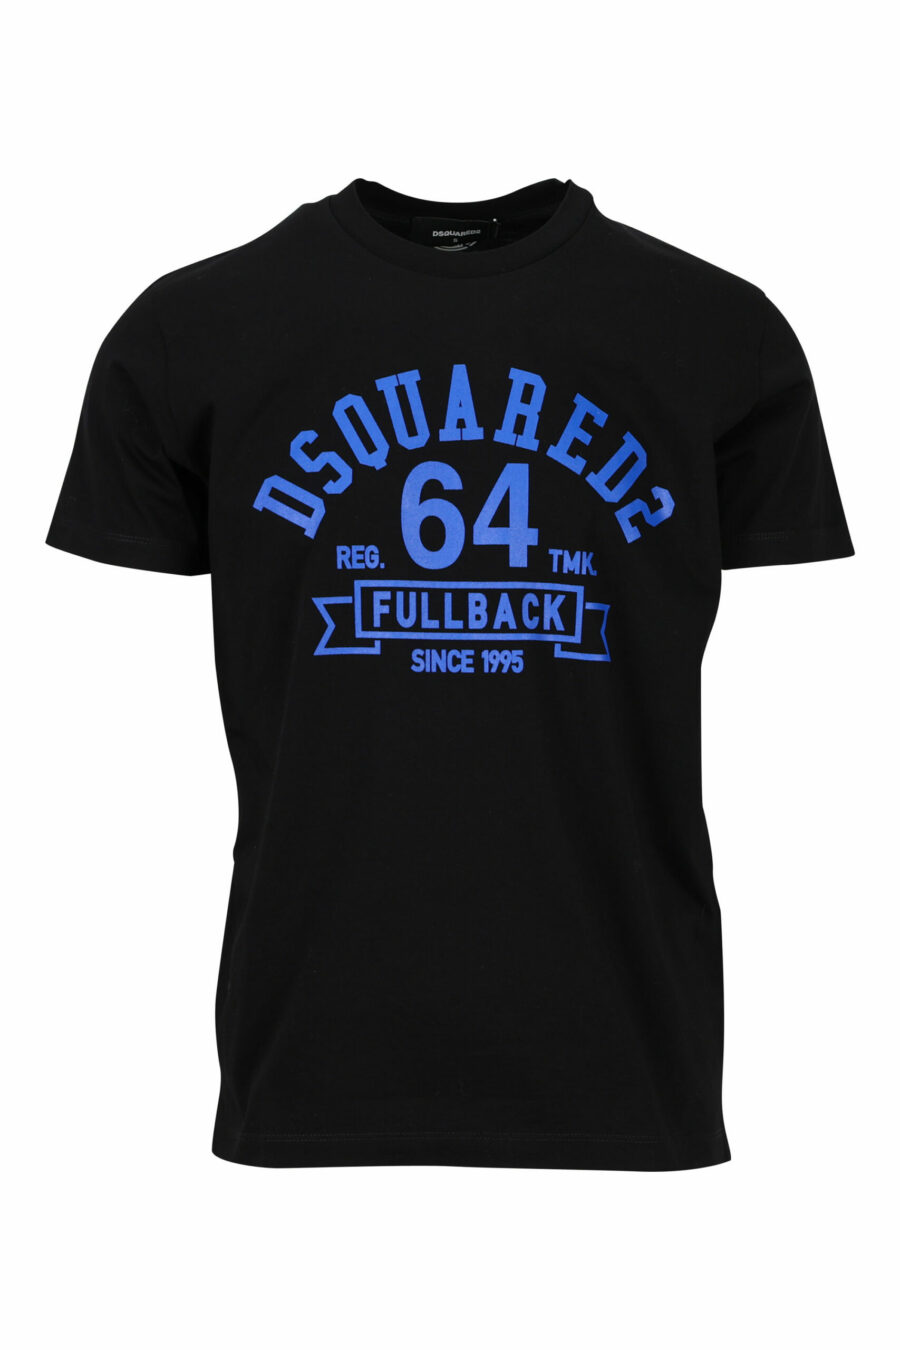 Schwarzes T-Shirt mit blauem "College"-Maxilogo - 8054148086510 skaliert